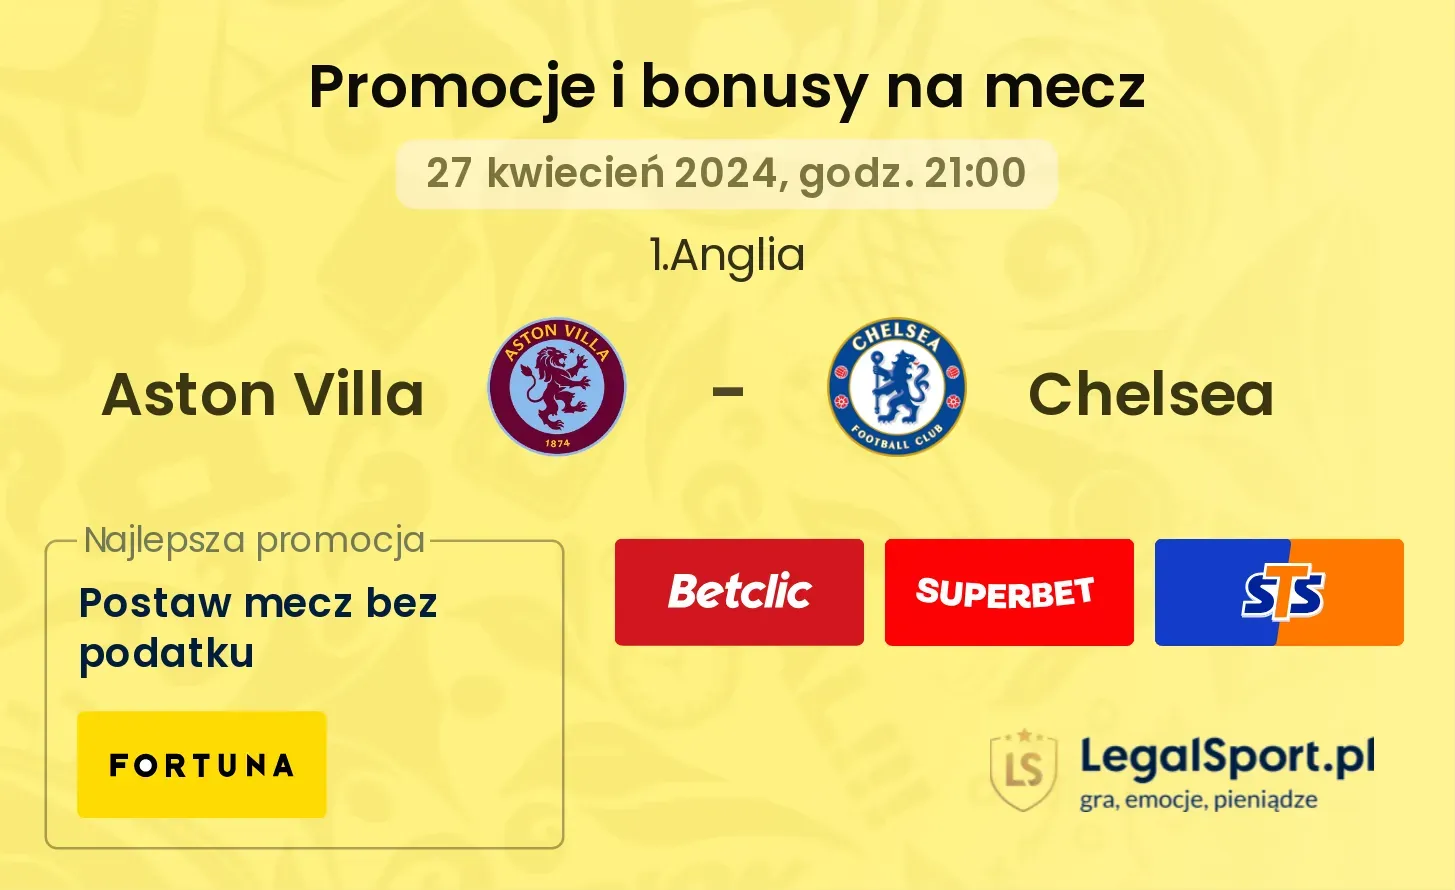 Aston Villa - Chelsea promocje bonusy na mecz